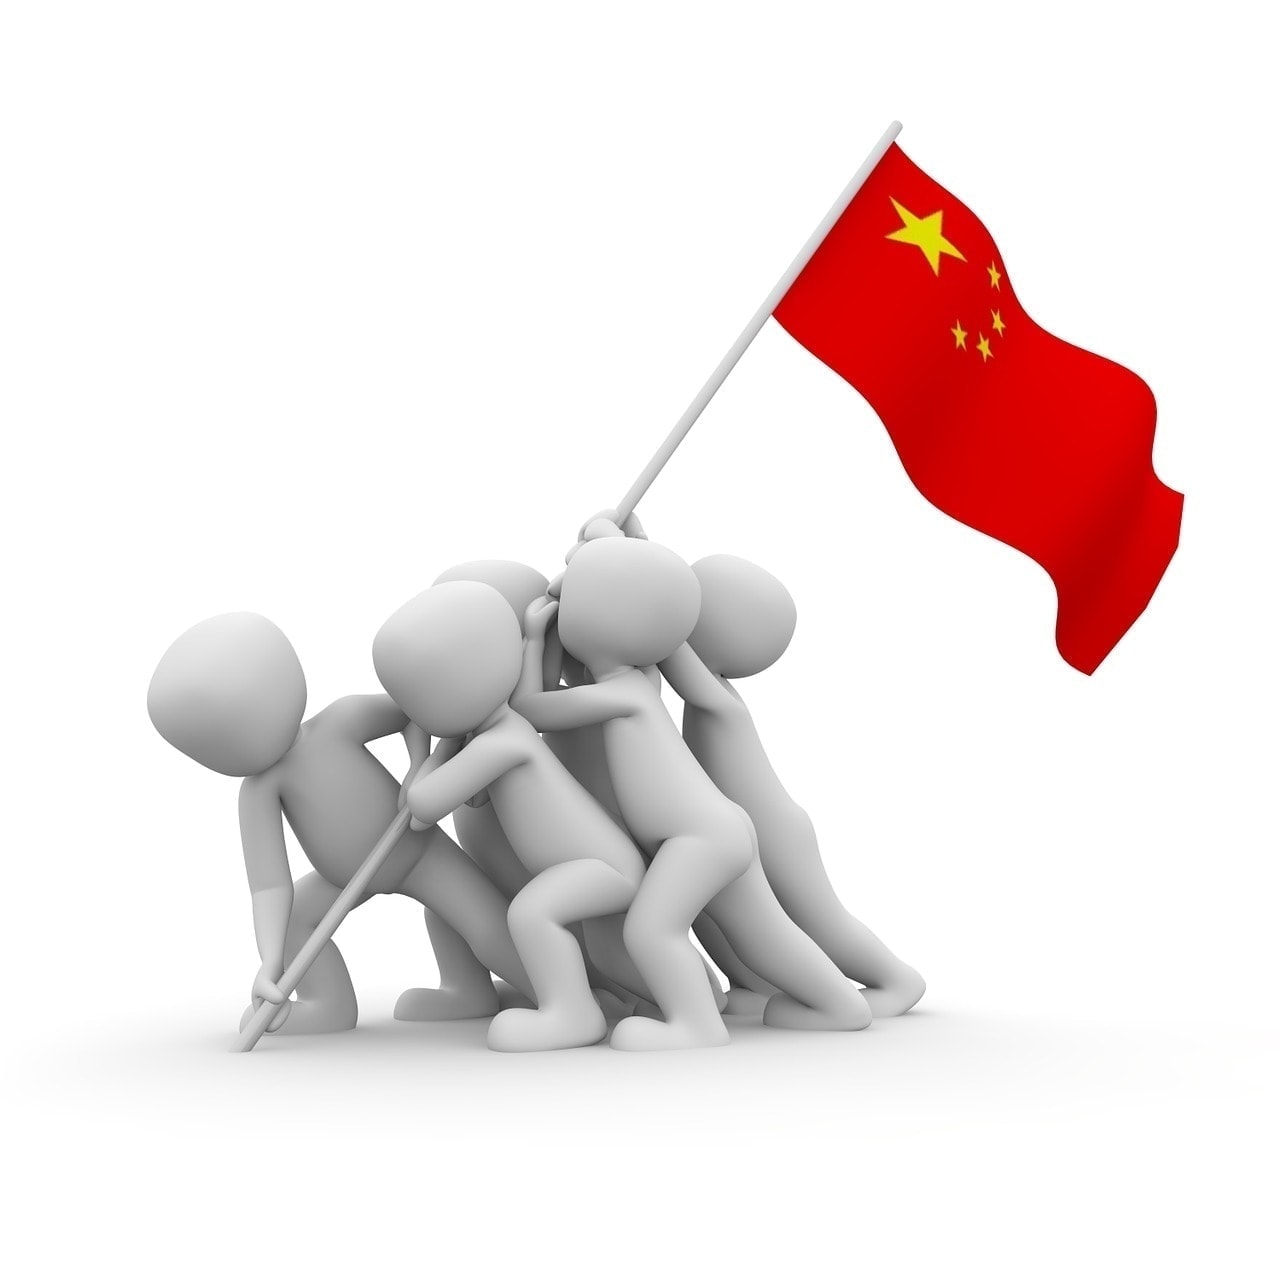 Der Kryptowochenrückblick - Chinesische Zentralbank weist Vermutung über nationale Kryptowährung zurück